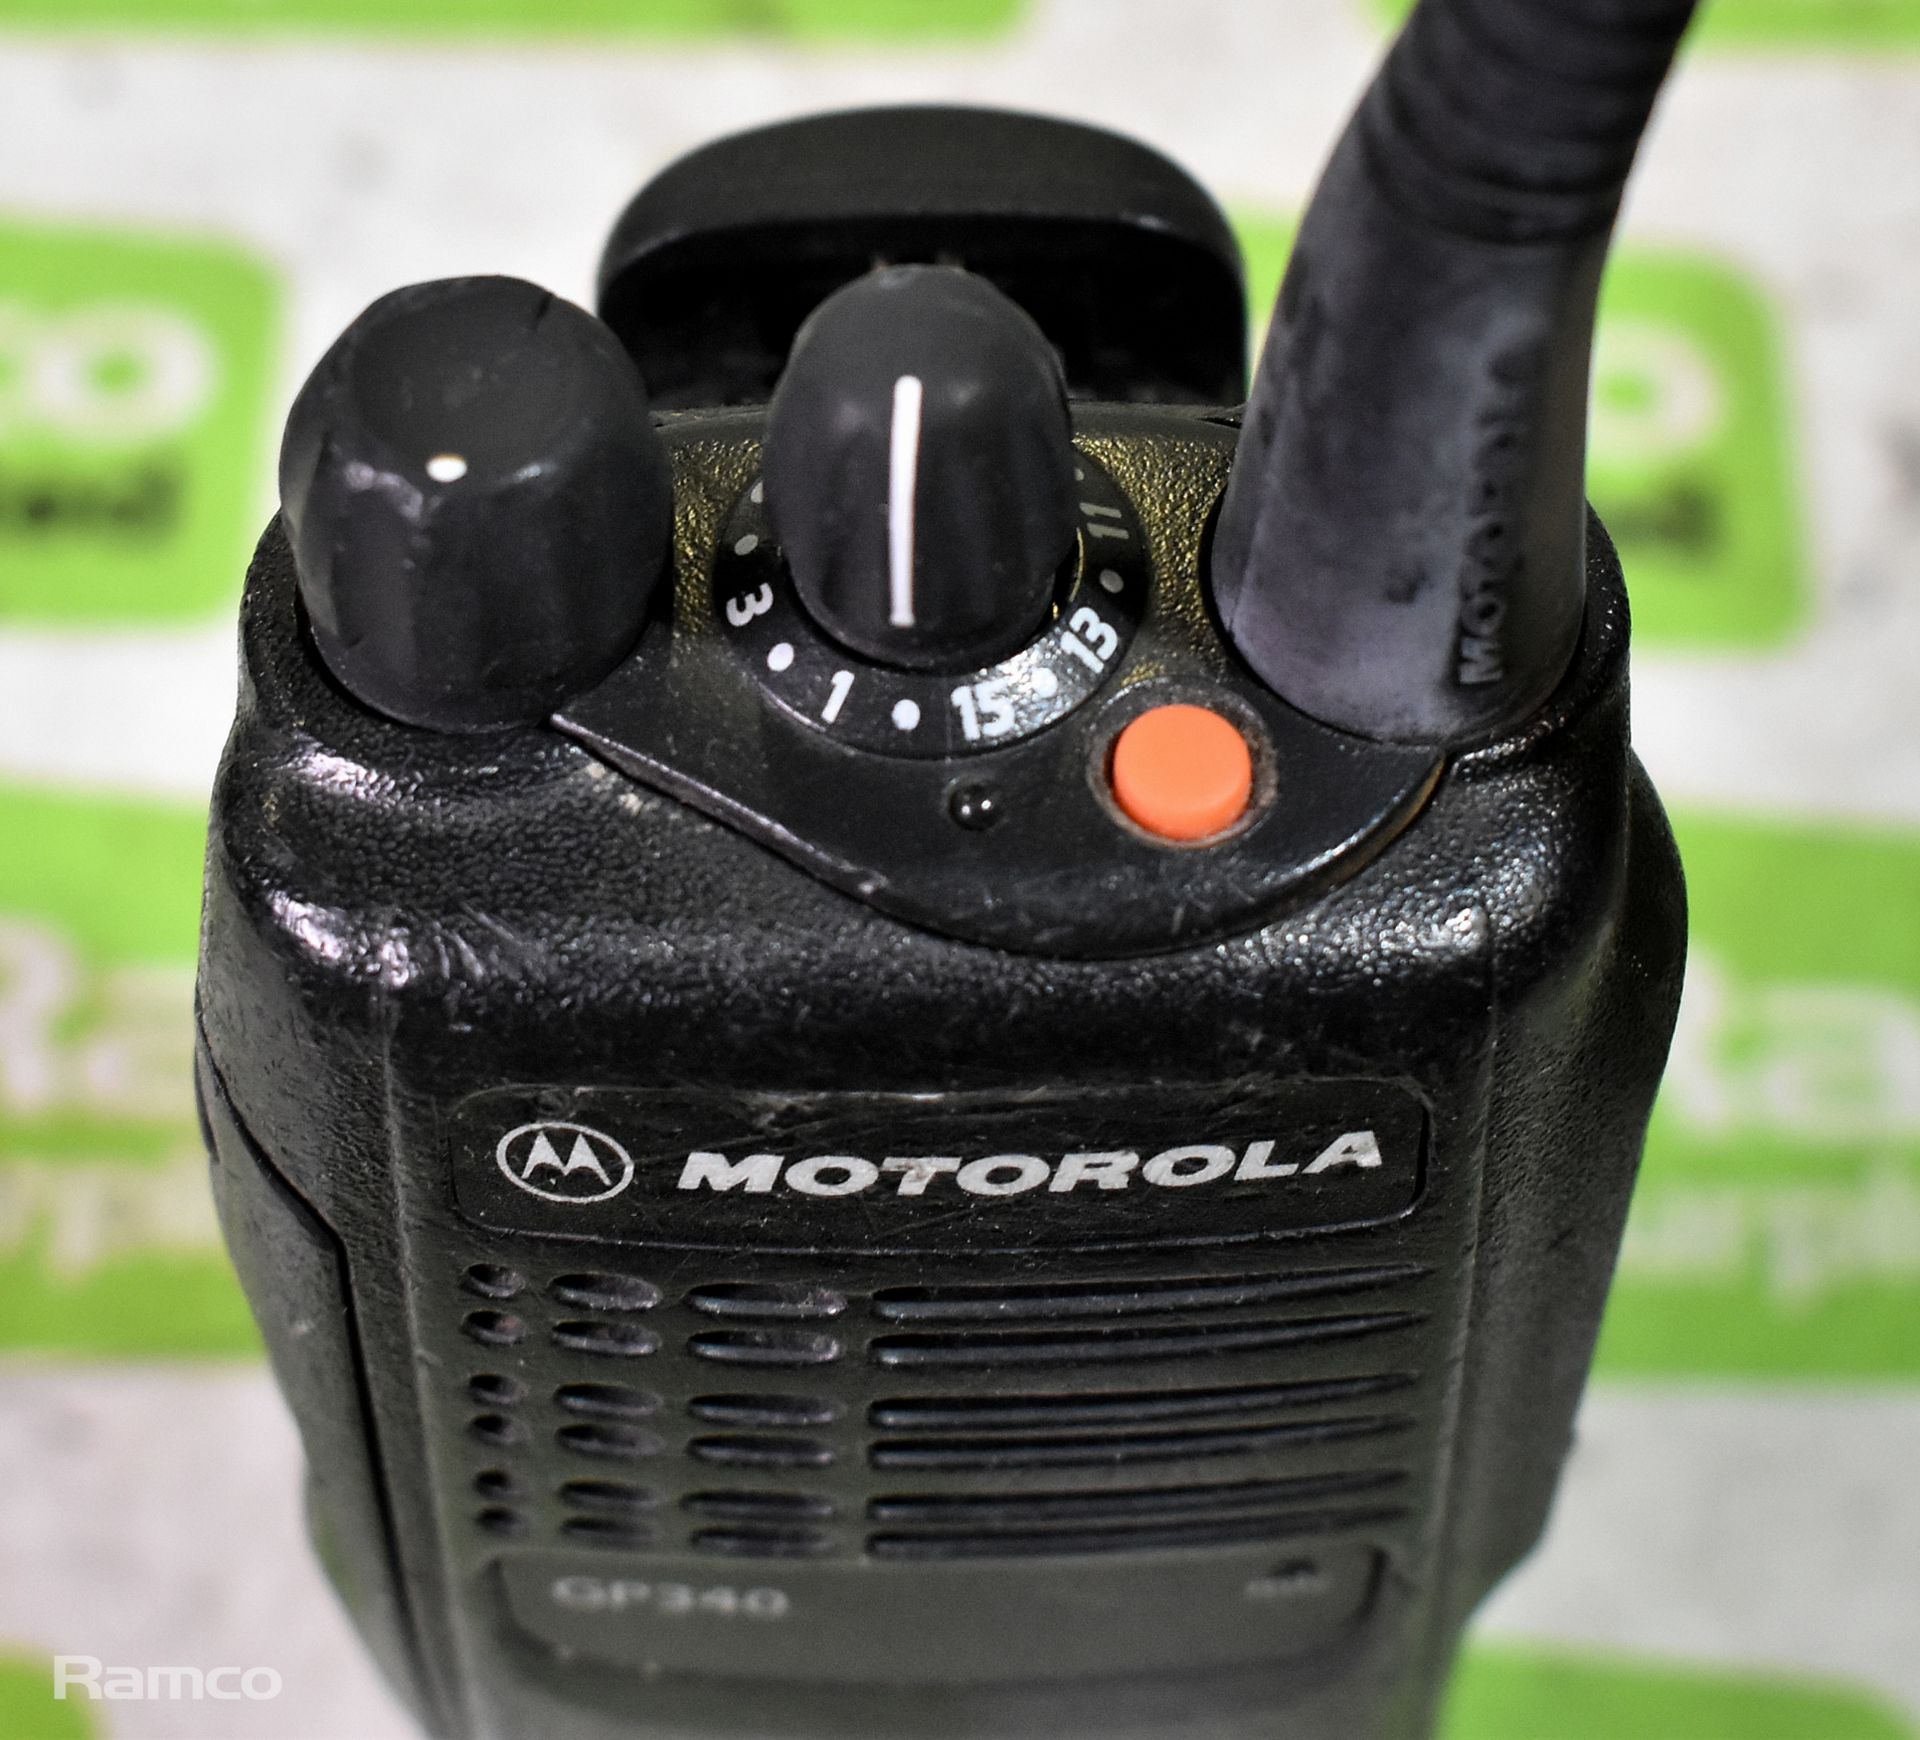 Alien Rx topeak & Park tool bicycle multi tool, Motorola PW502C walkie talkie - Image 3 of 8